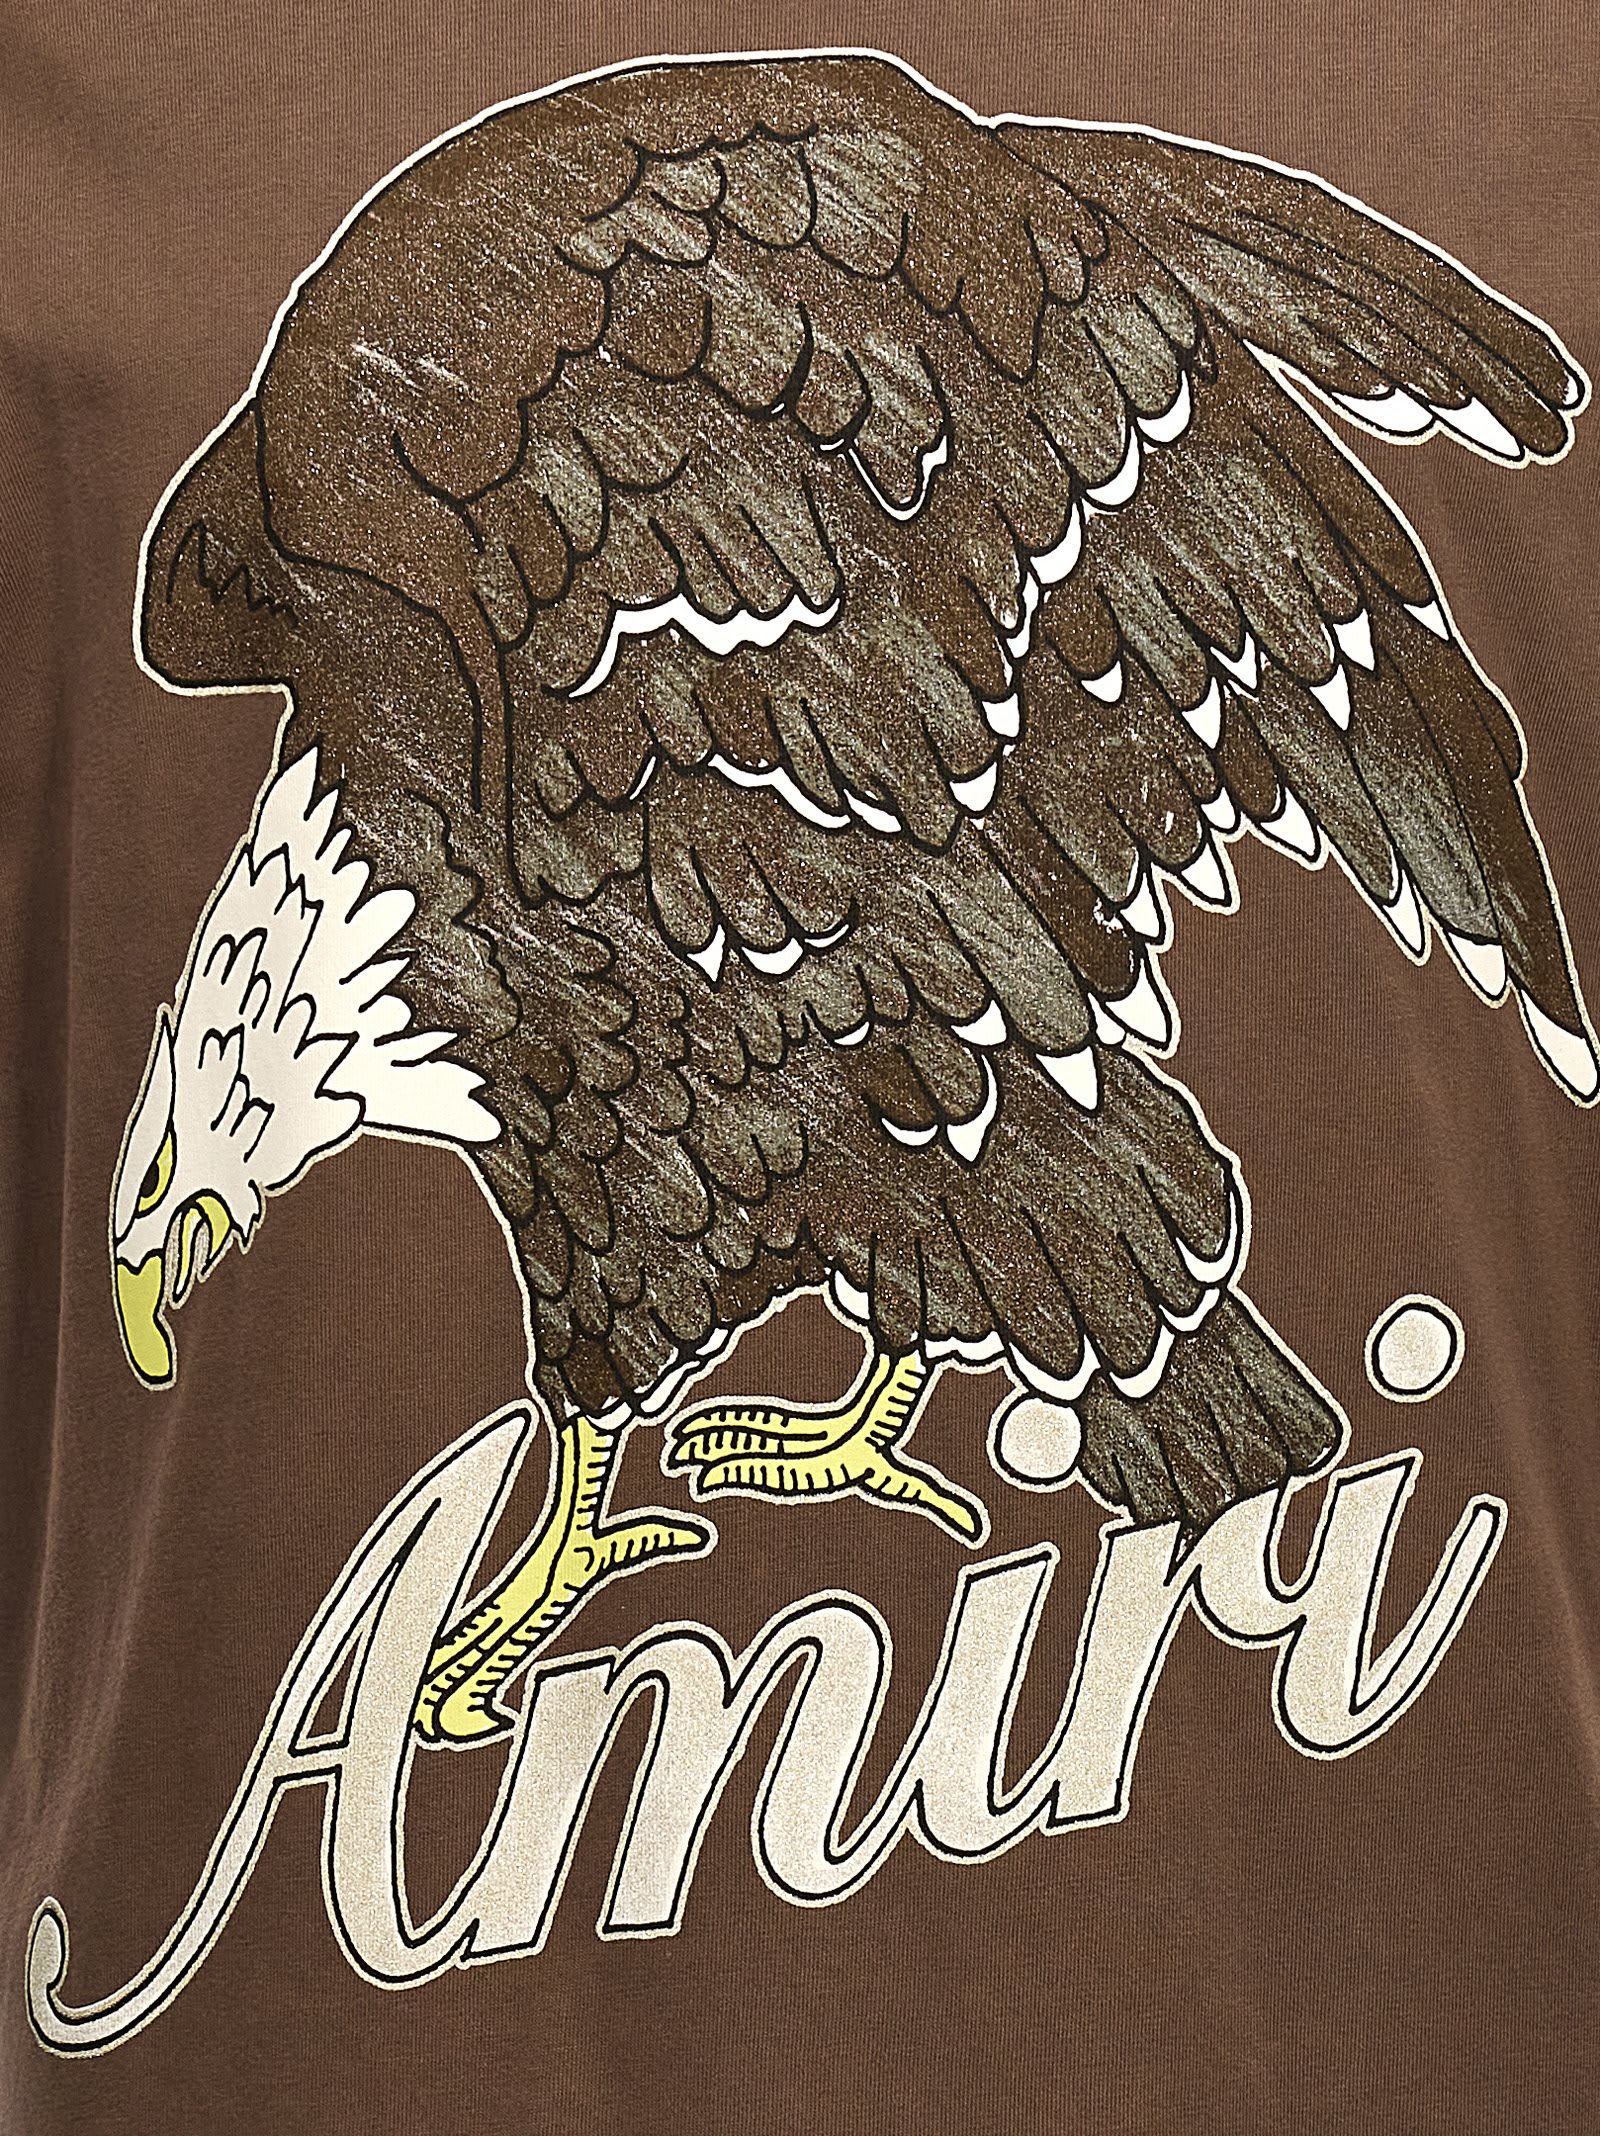 Shop Amiri Eagle T-shirt In Brown